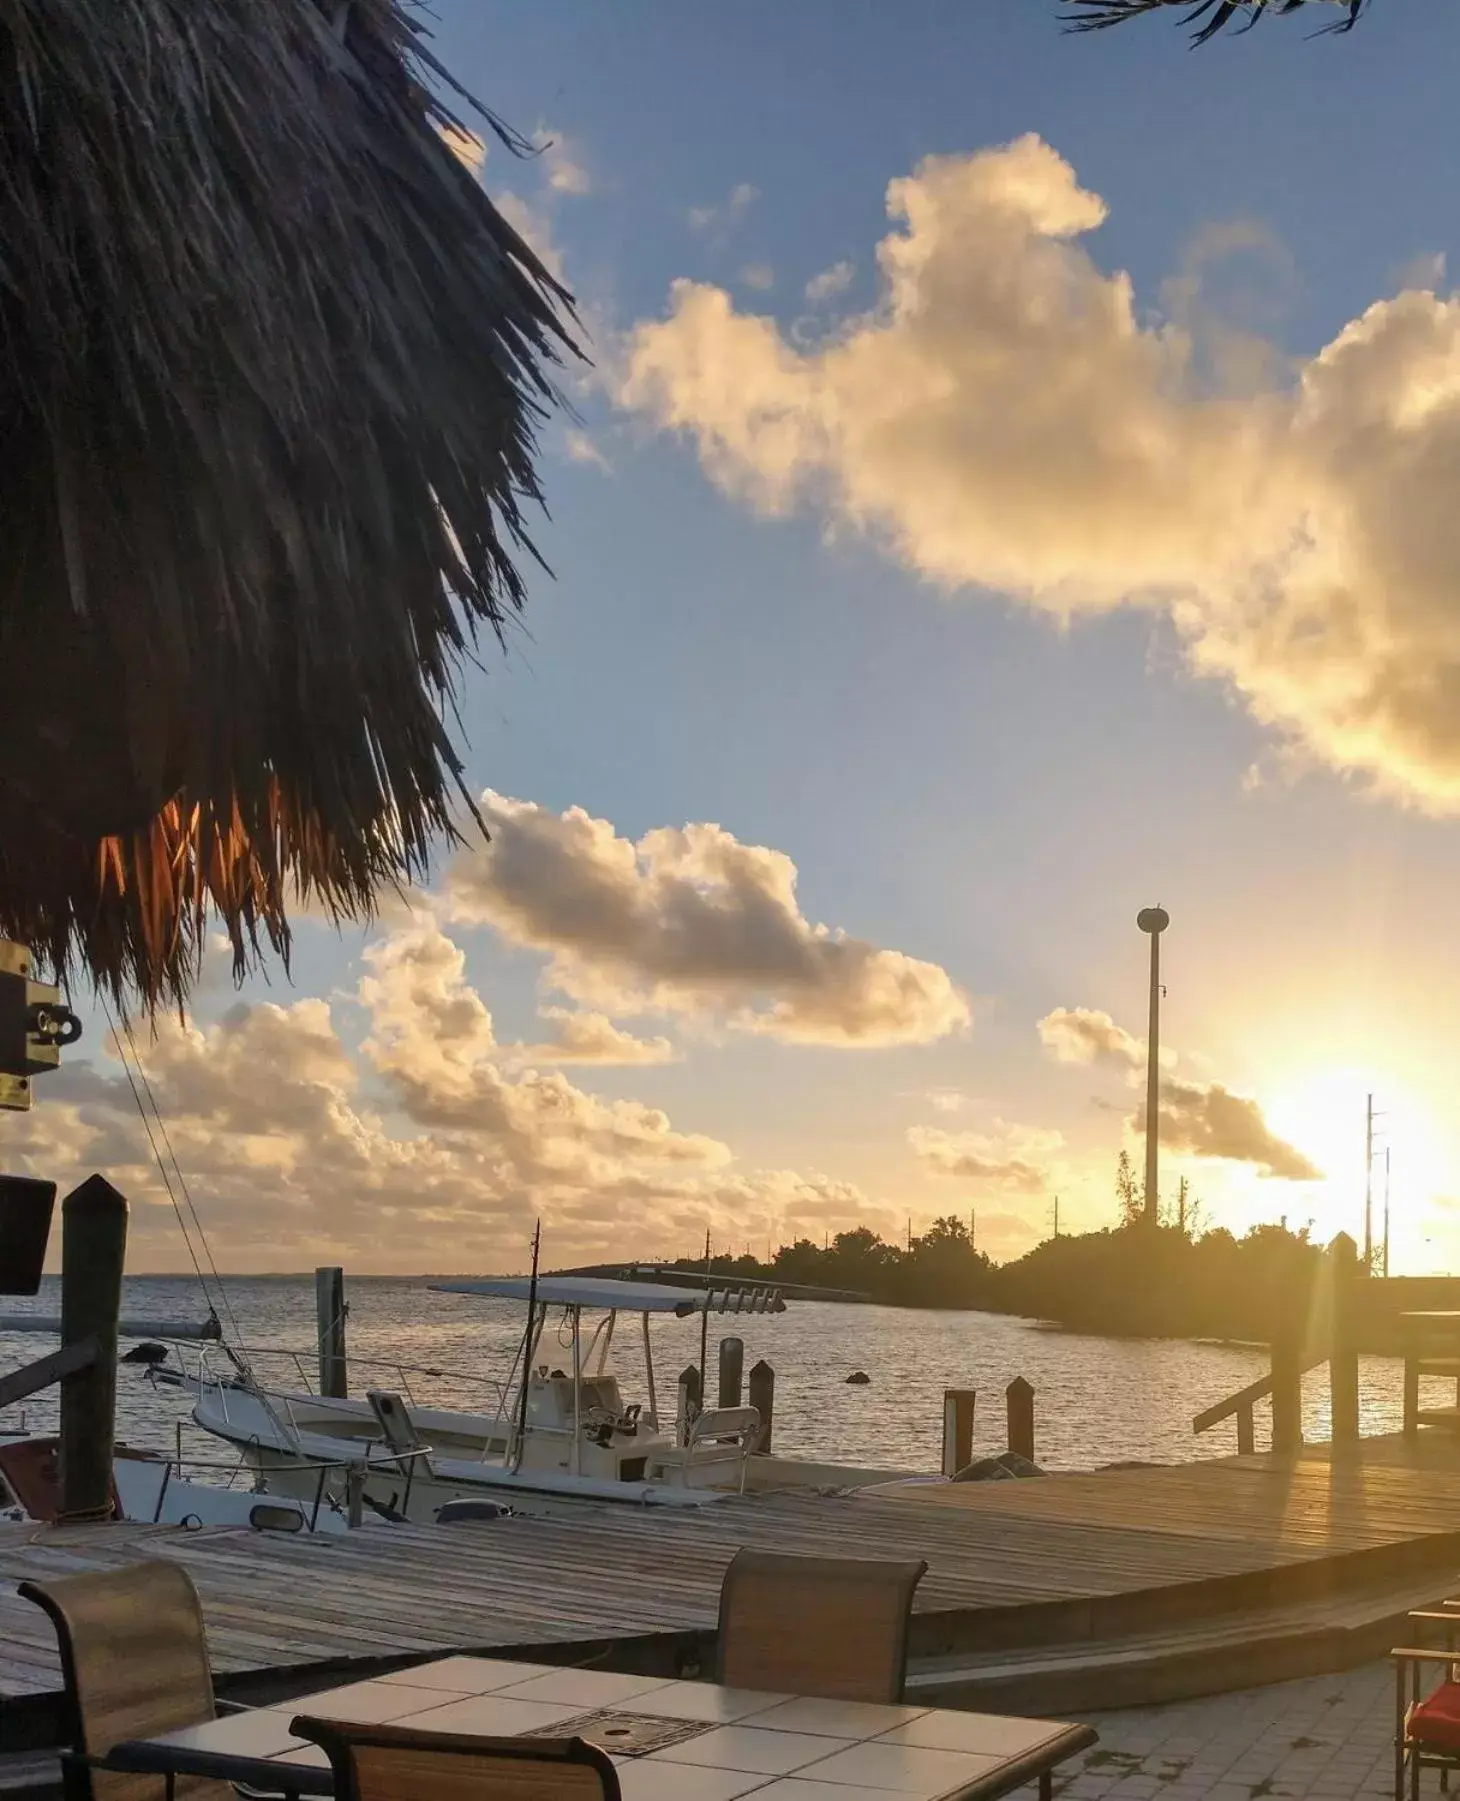 Property building, Sunrise/Sunset in Conch Key Fishing Lodge & Marina